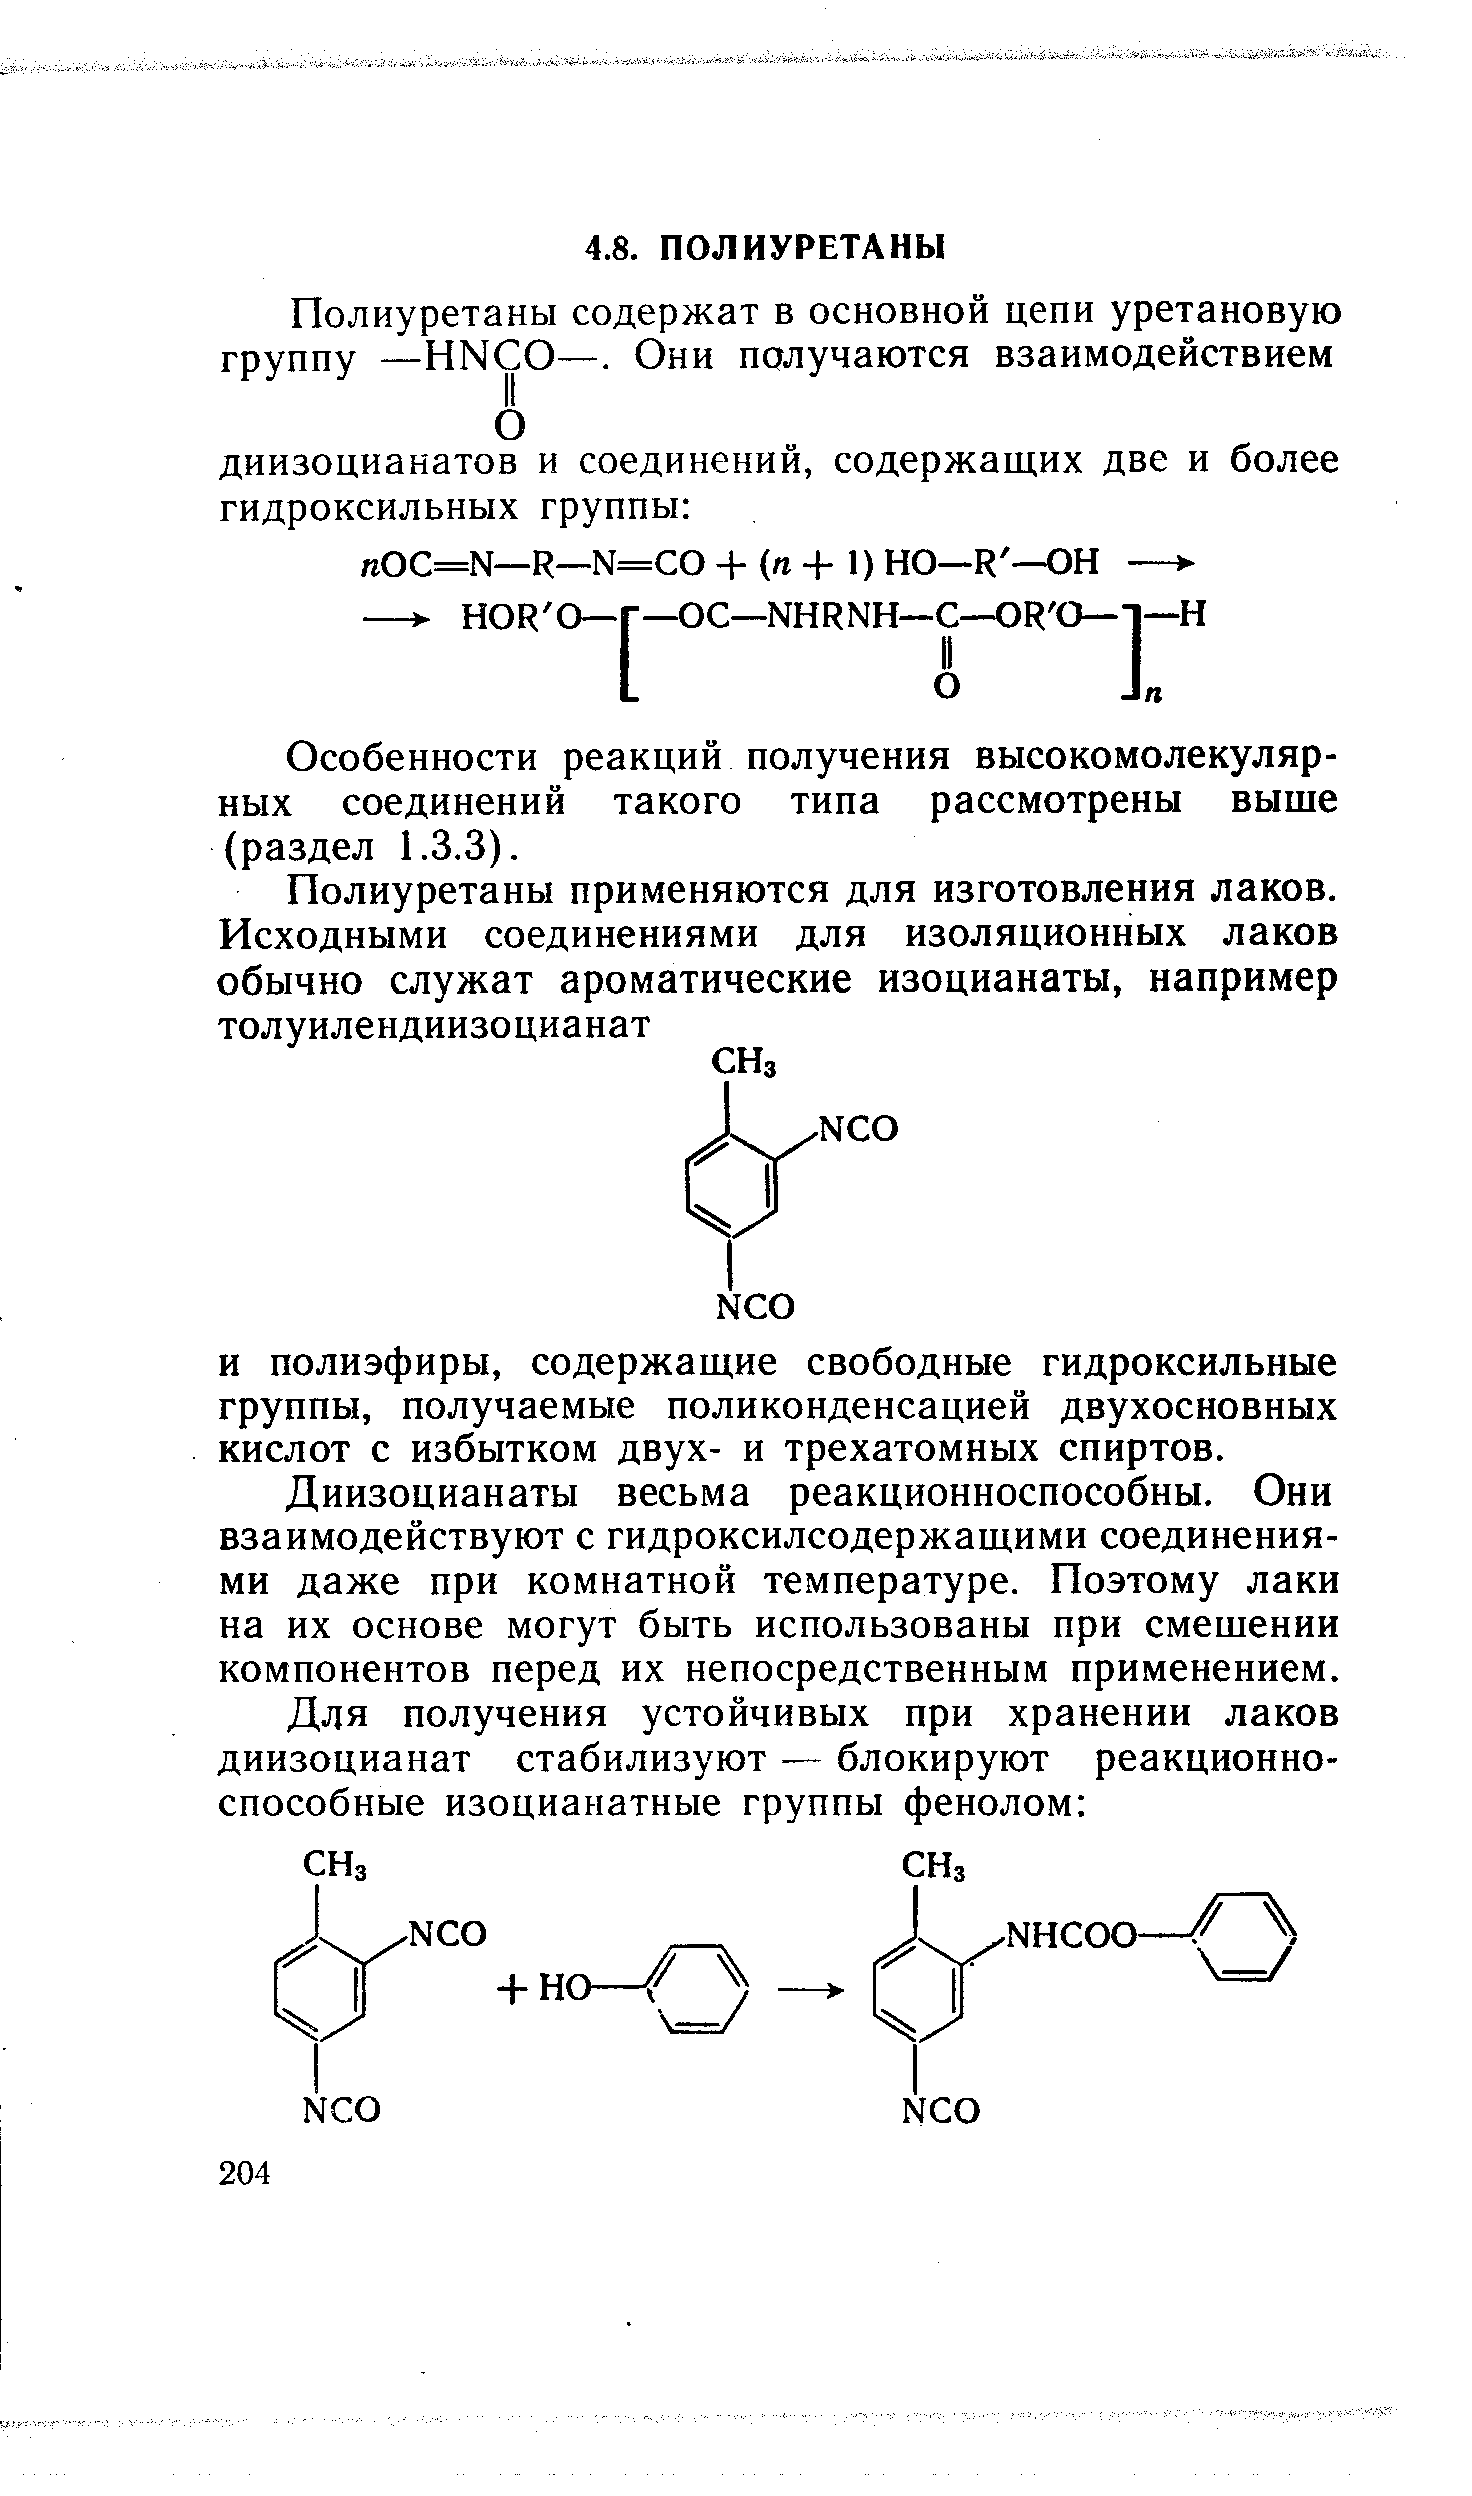 Особенности реакций получения высокомолекулярных соединений такого типа рассмотрены выше (раздел 1.3.3).